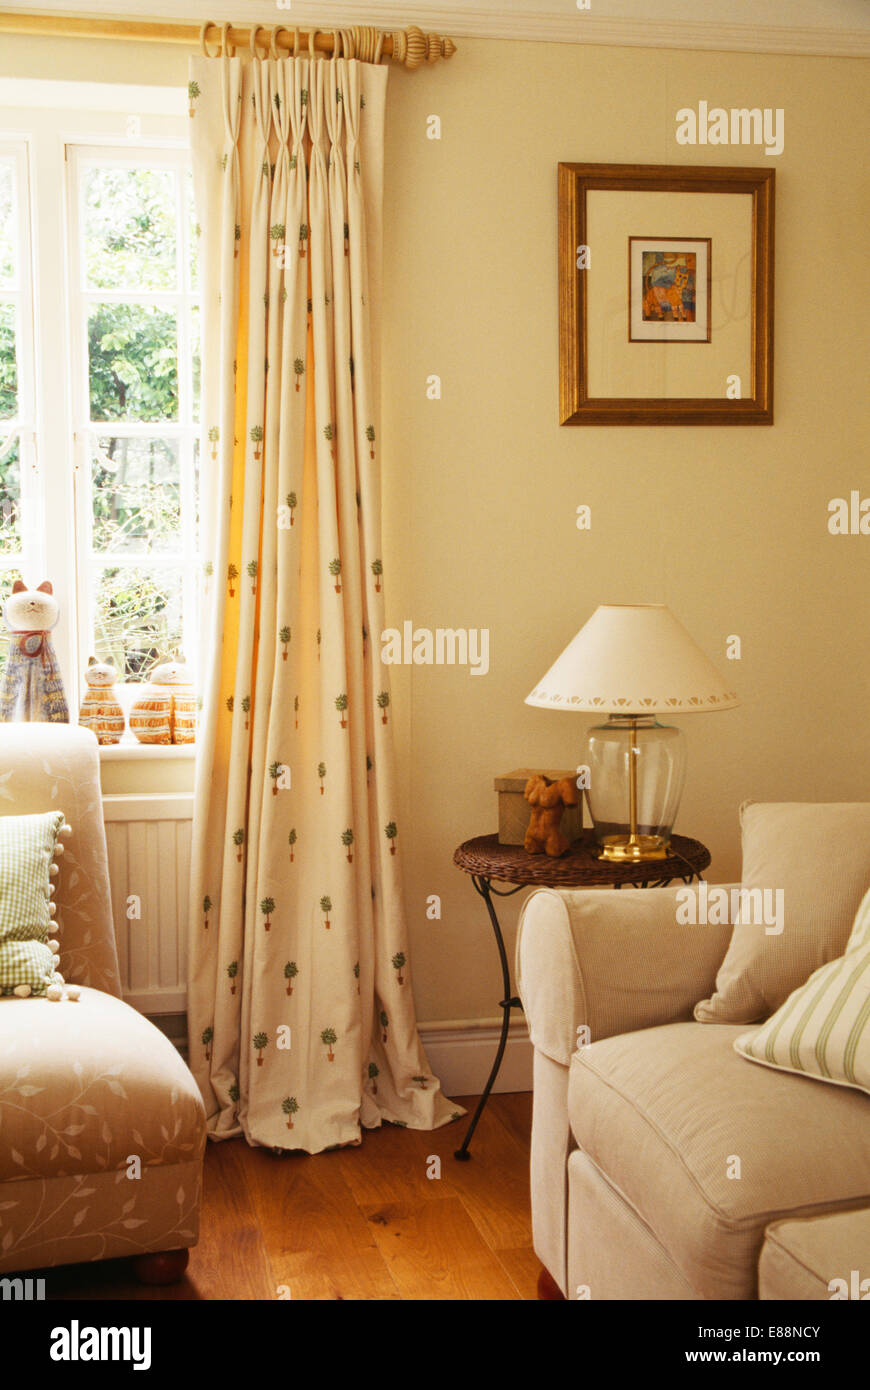 Topiaria da-crema modellato tende su palo di legno sulla finestra in crema paese soggiorno con divani color crema Foto Stock